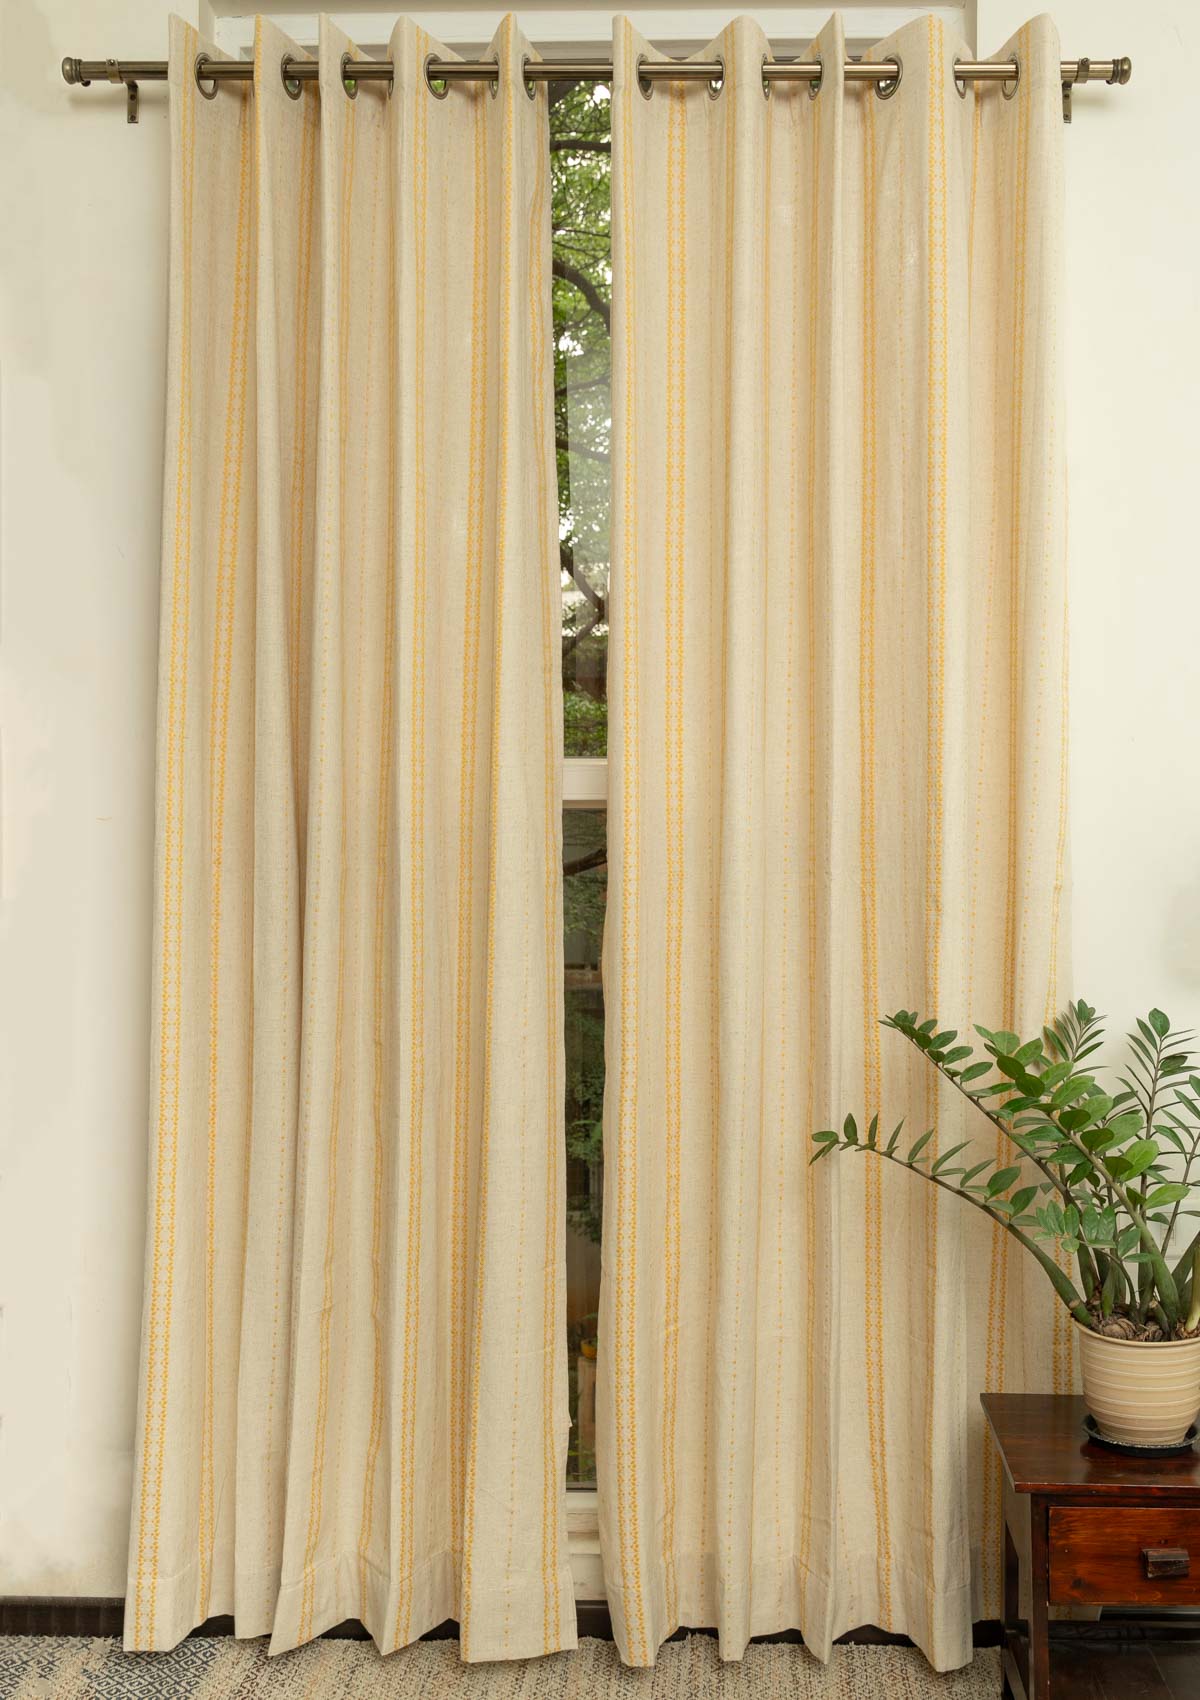 Aster linen minimal design curtain for living room - Room darkening - Mustard - Pack of 1